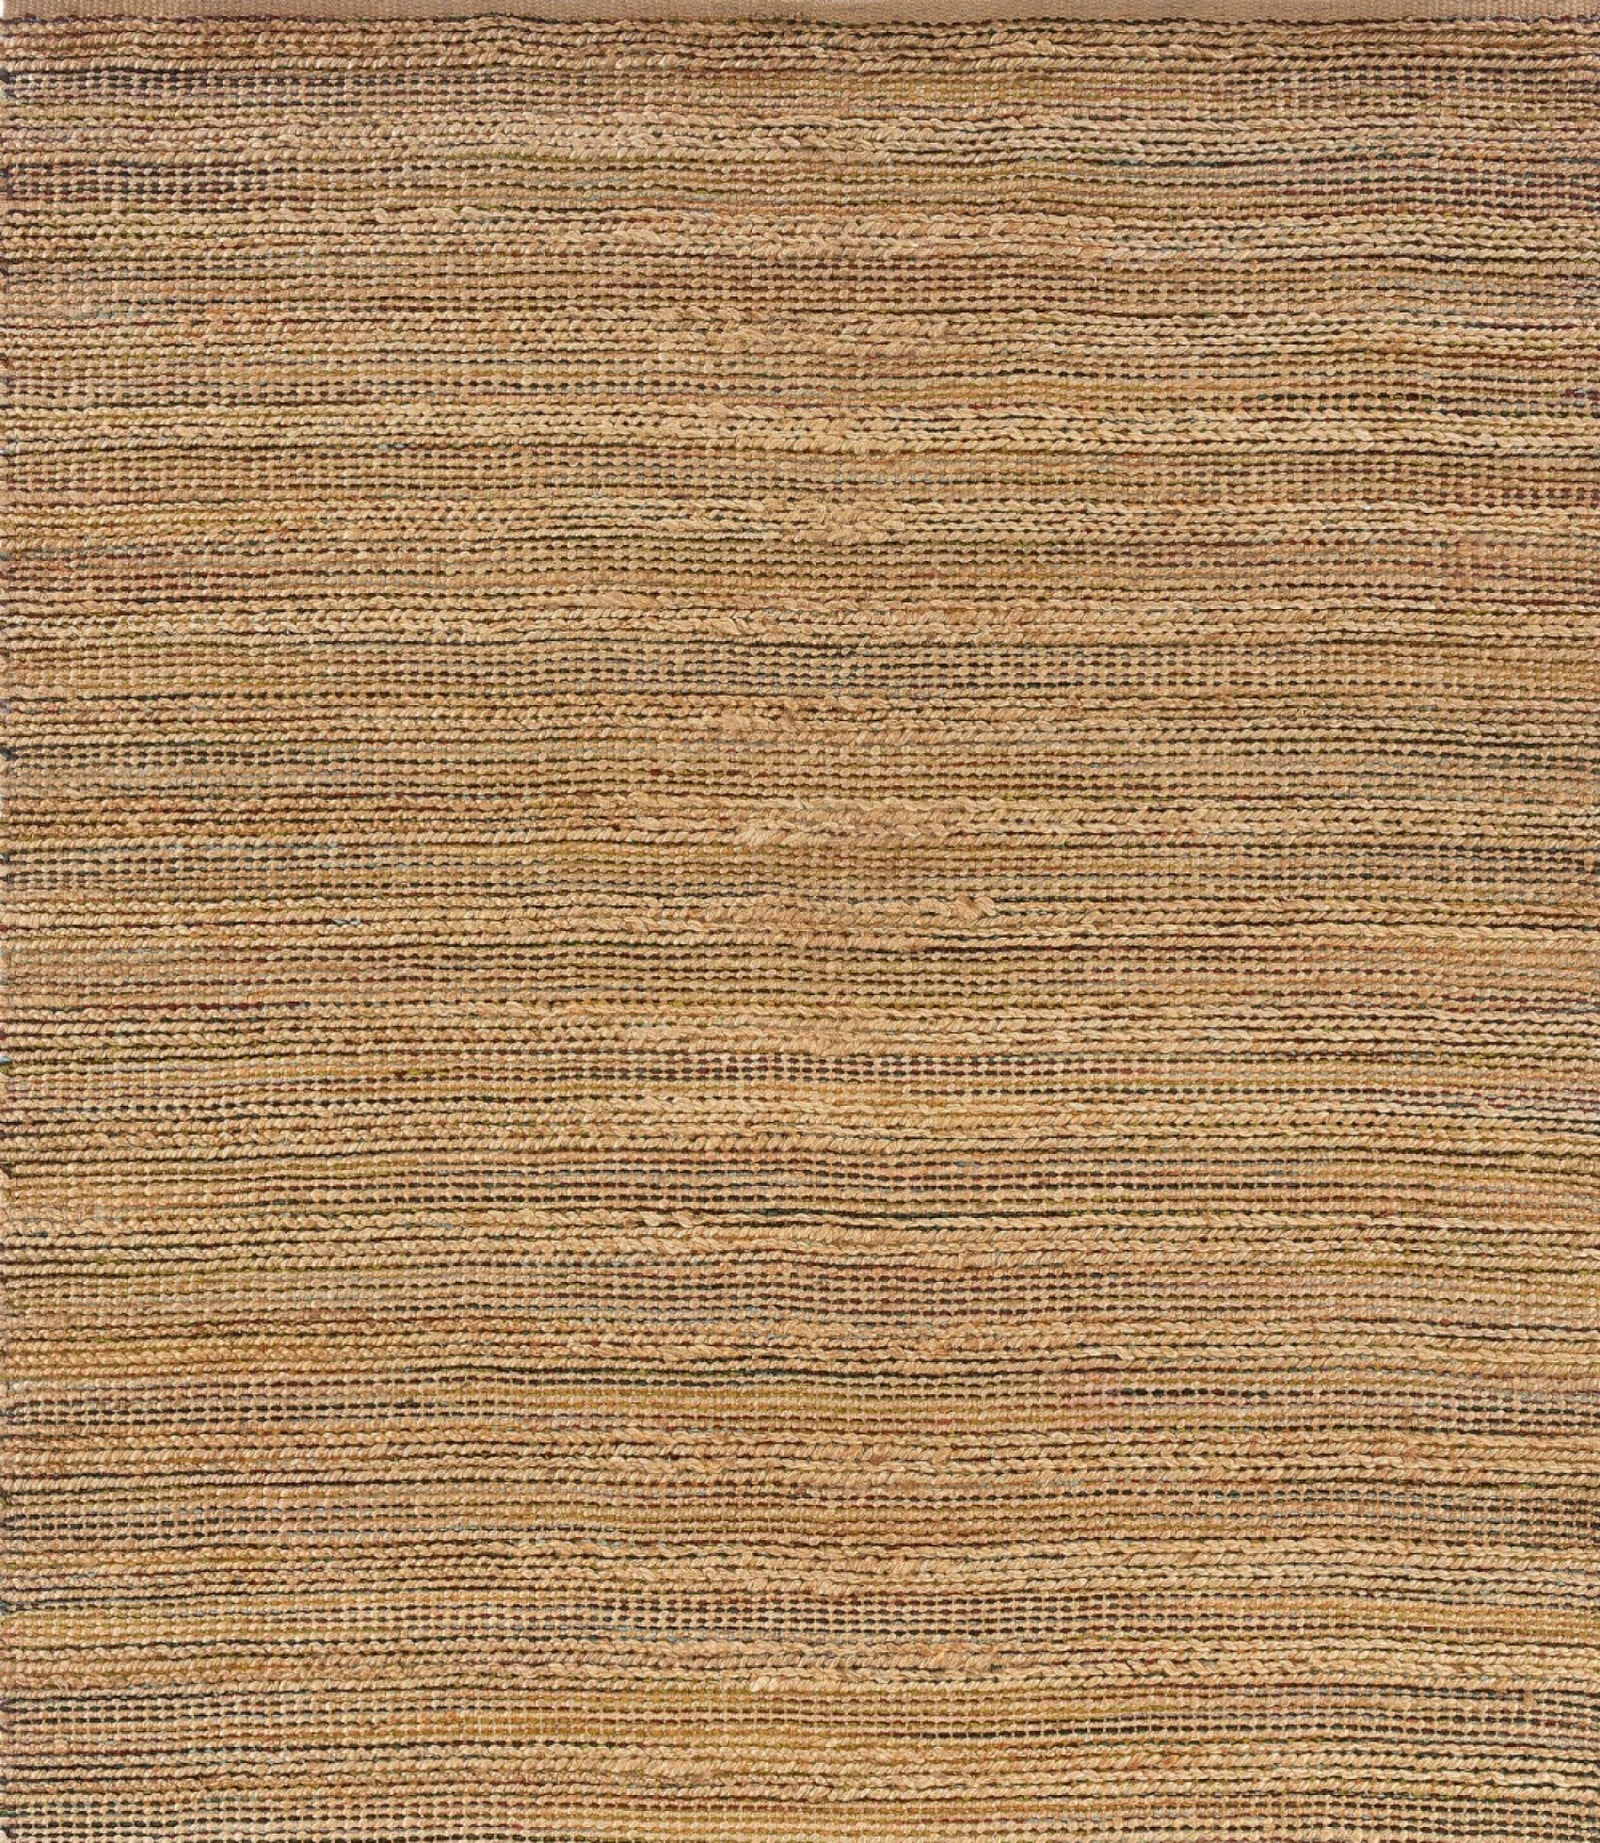 8’ x 10’ Brown Braided Jute Area Rug